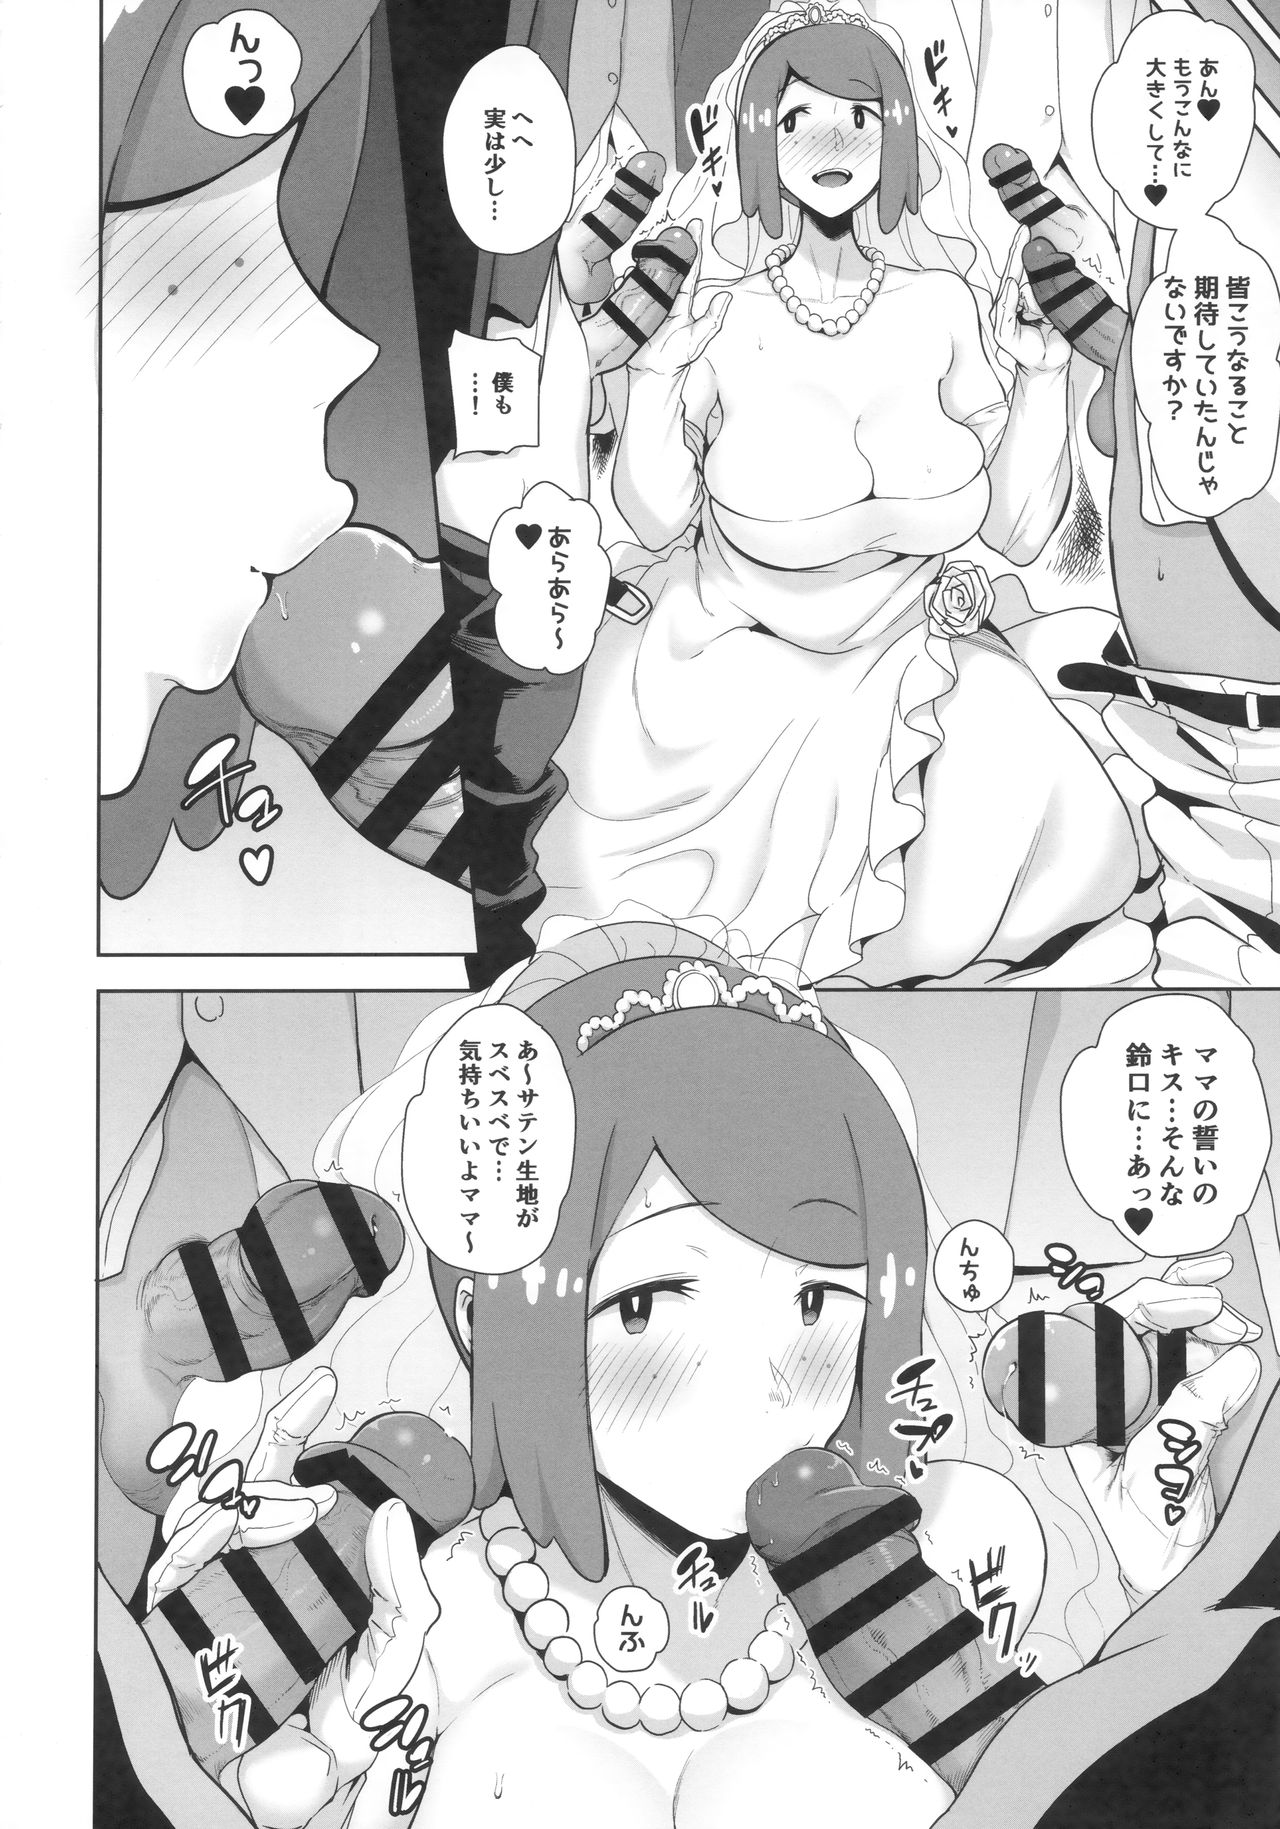 (COMIC1☆16) [DOLL PLAY (Kurosu Gatari)] Alola no Yoru no Sugata 6 (Pokémon Sun and Moon) page 9 full